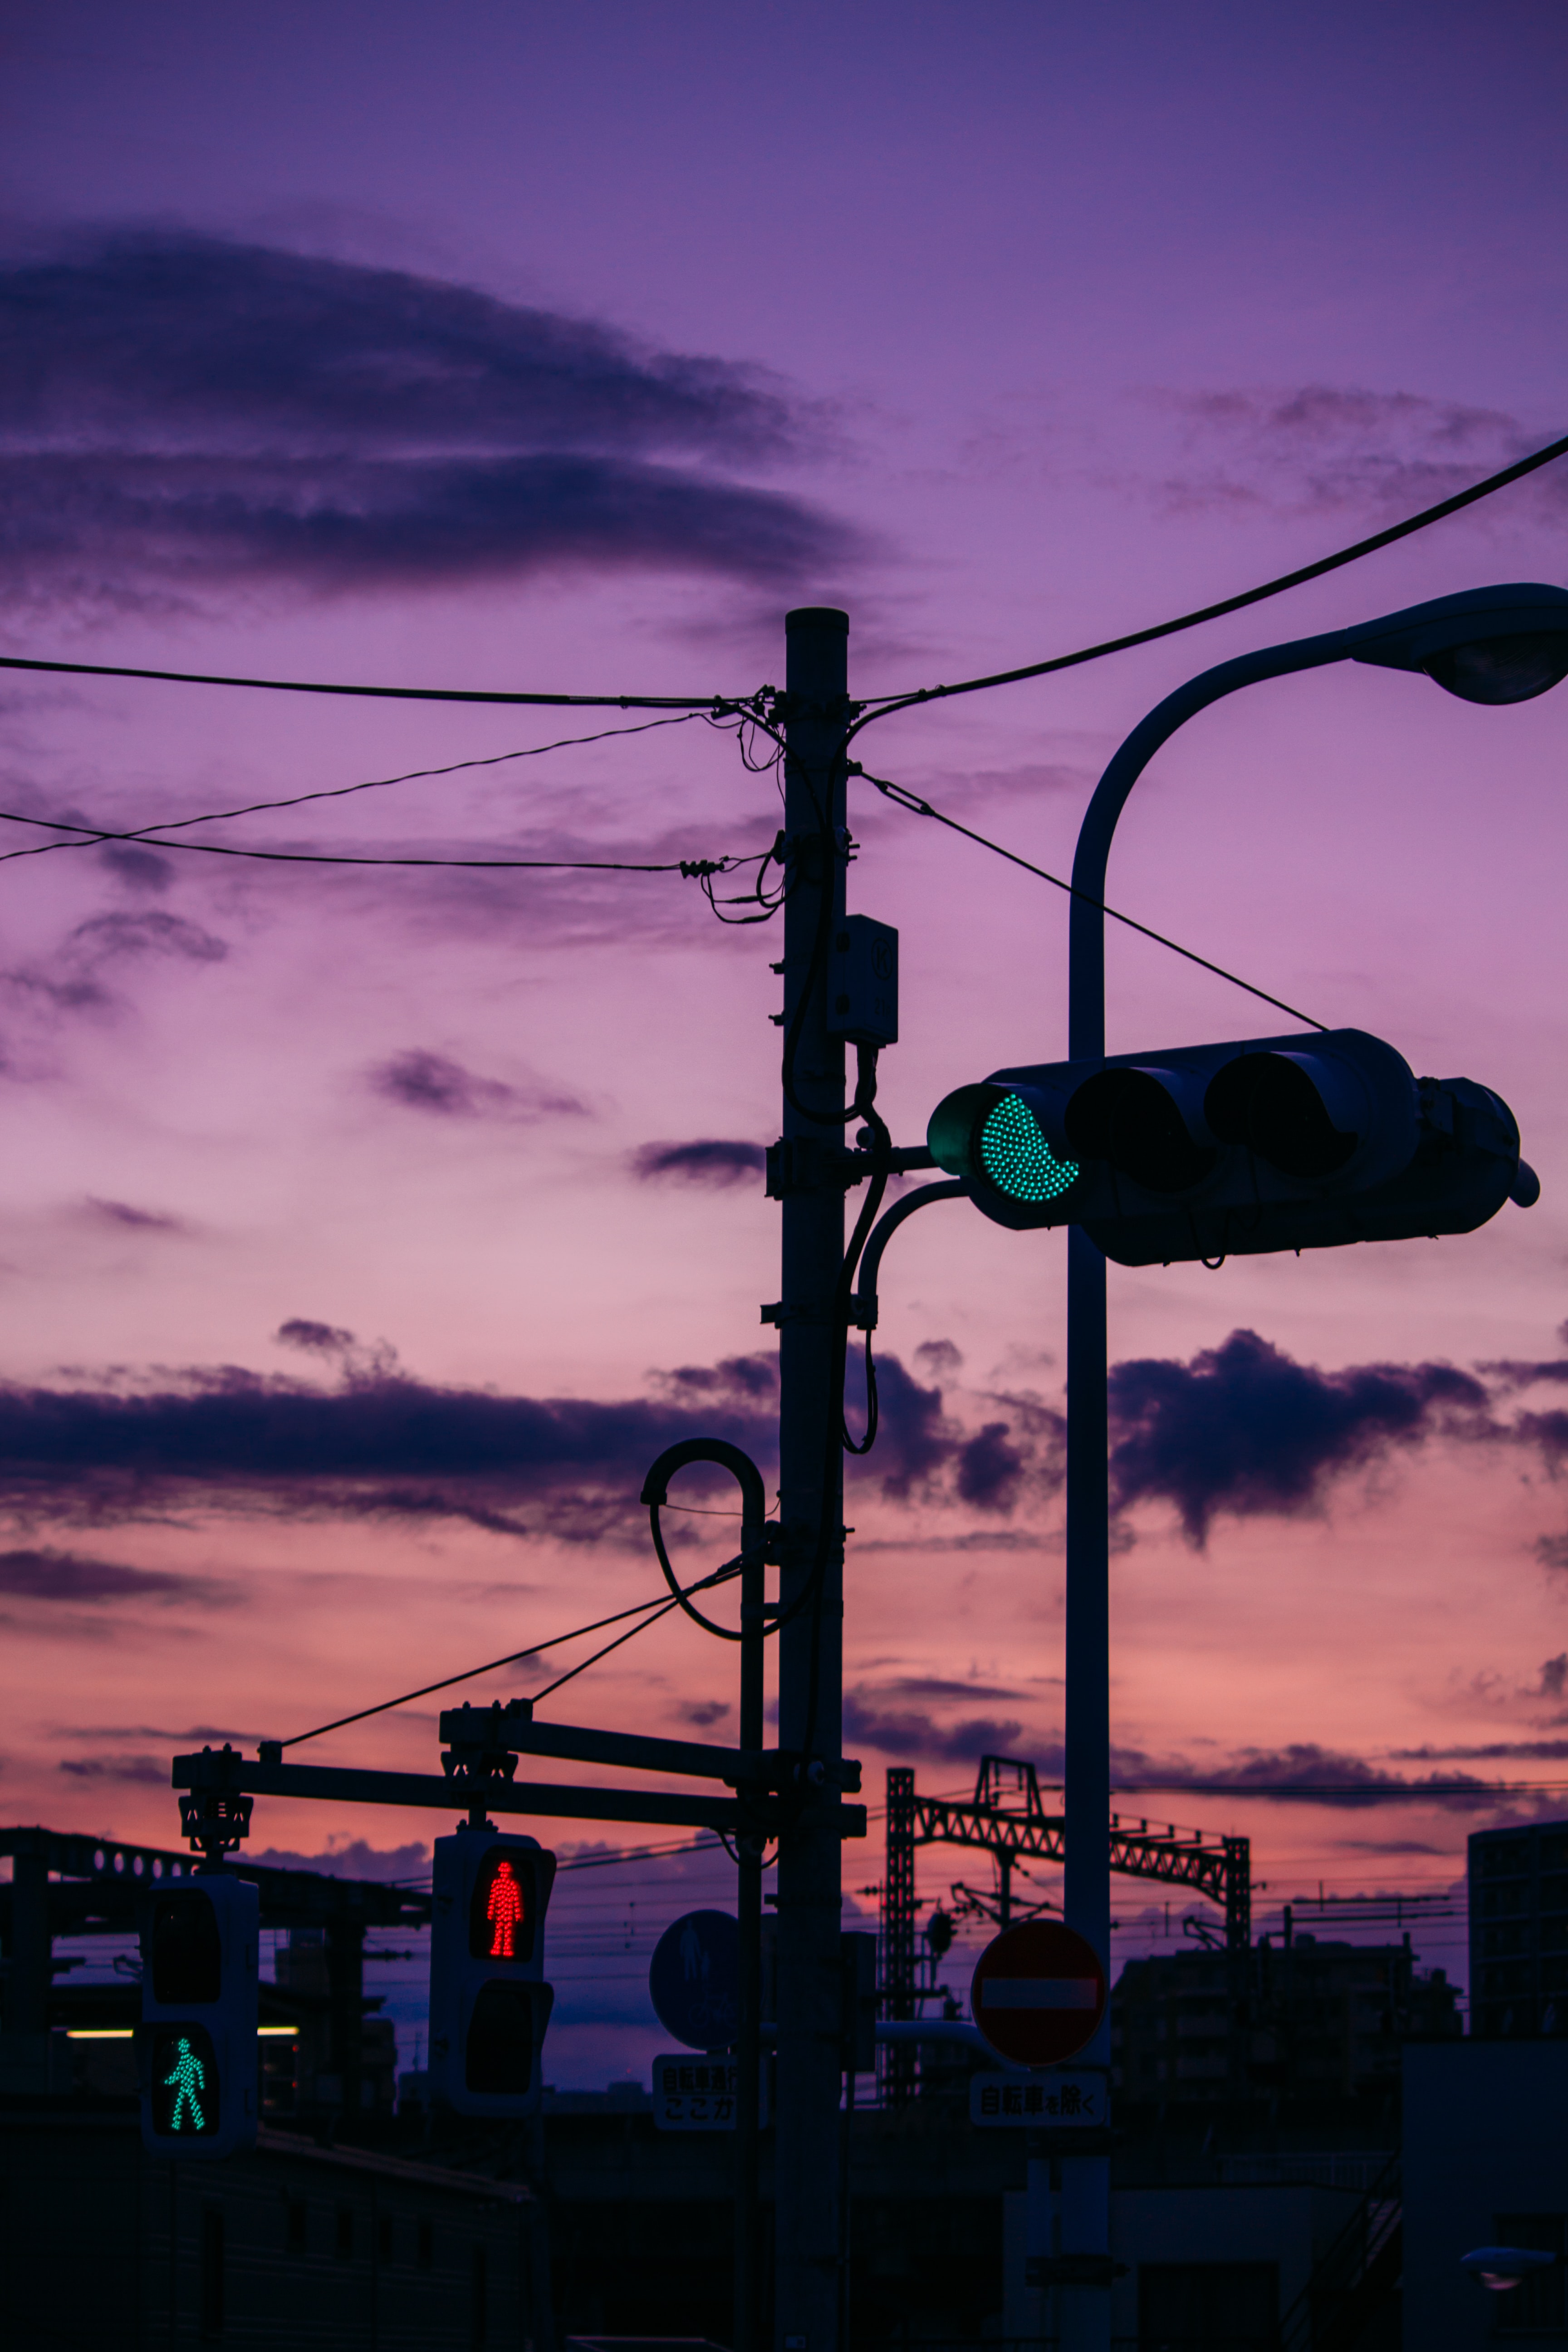 wires, twilight, dark, dusk, evening, traffic light, wire